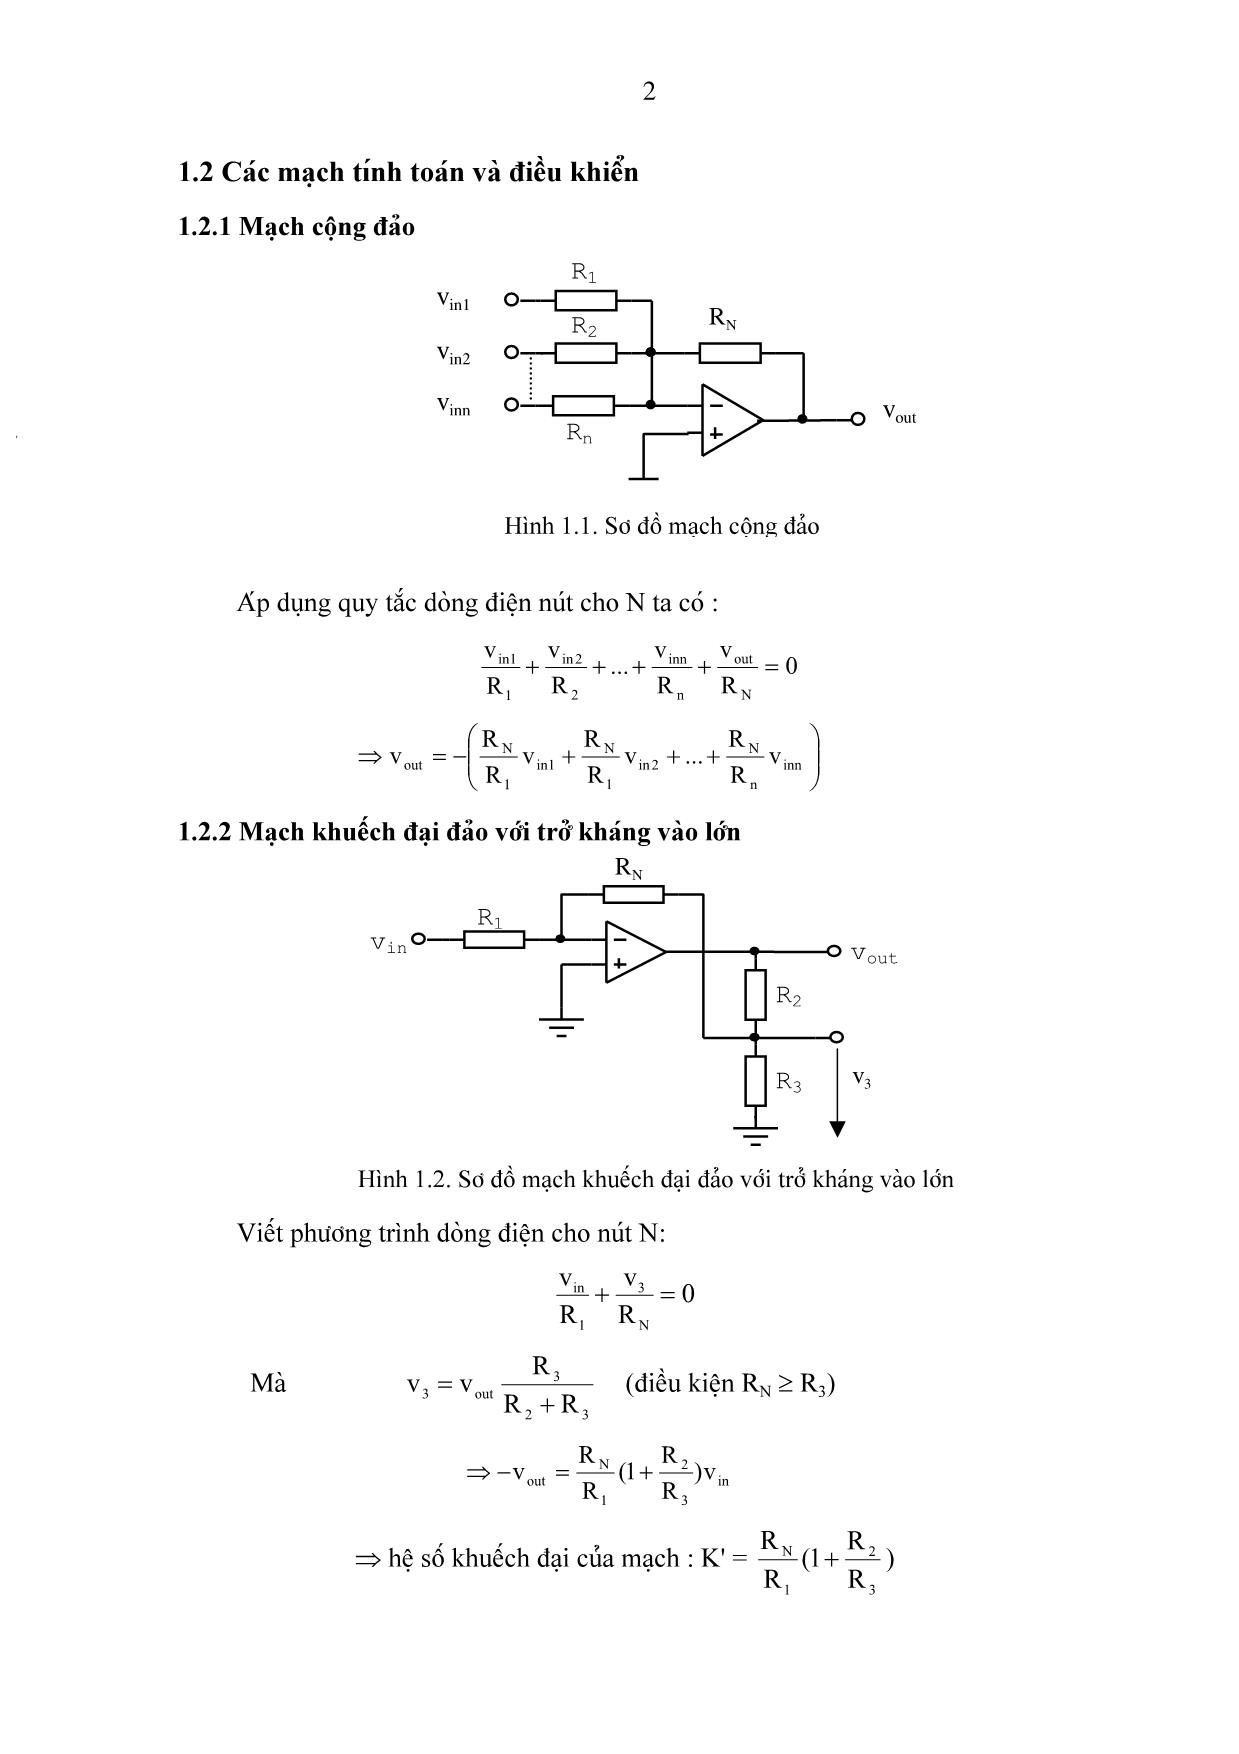 Bài giảng chương 1: Các mạch tính toán, điều khiển và tạo hàm dùng khuếch đại thuật toán trang 2